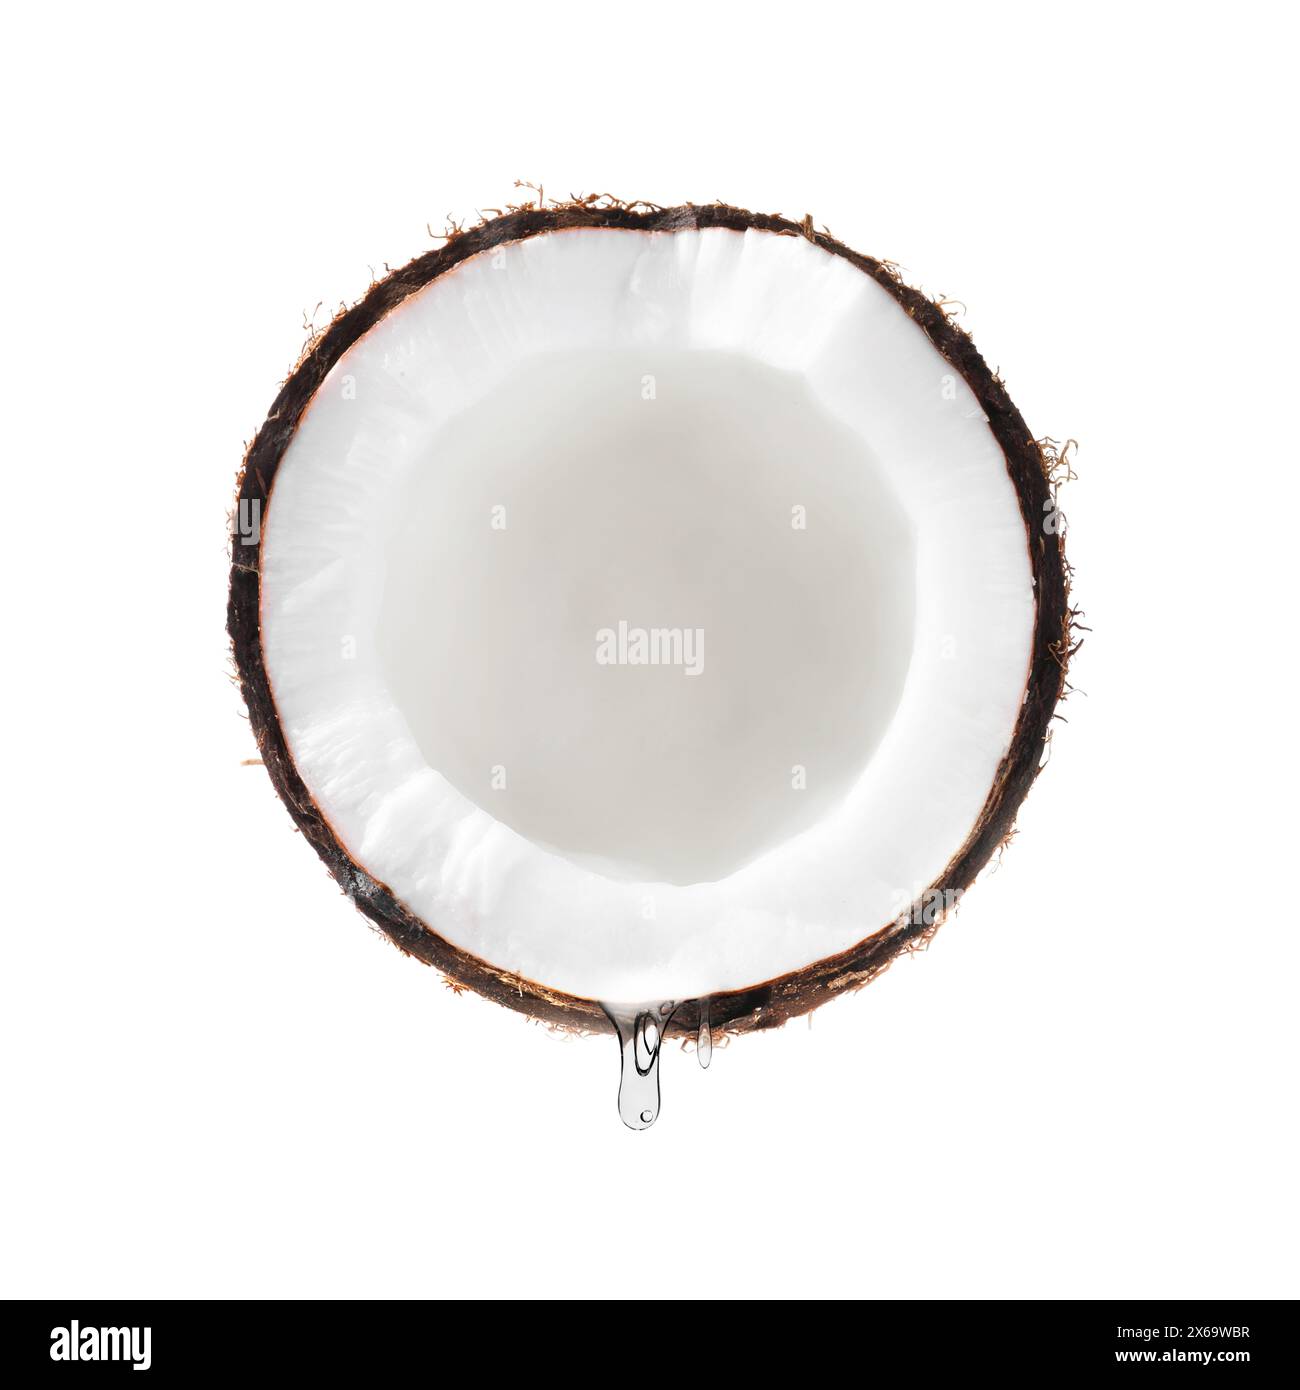 Kokosnuss mit tropfendem Öl isoliert auf weiß Stockfoto